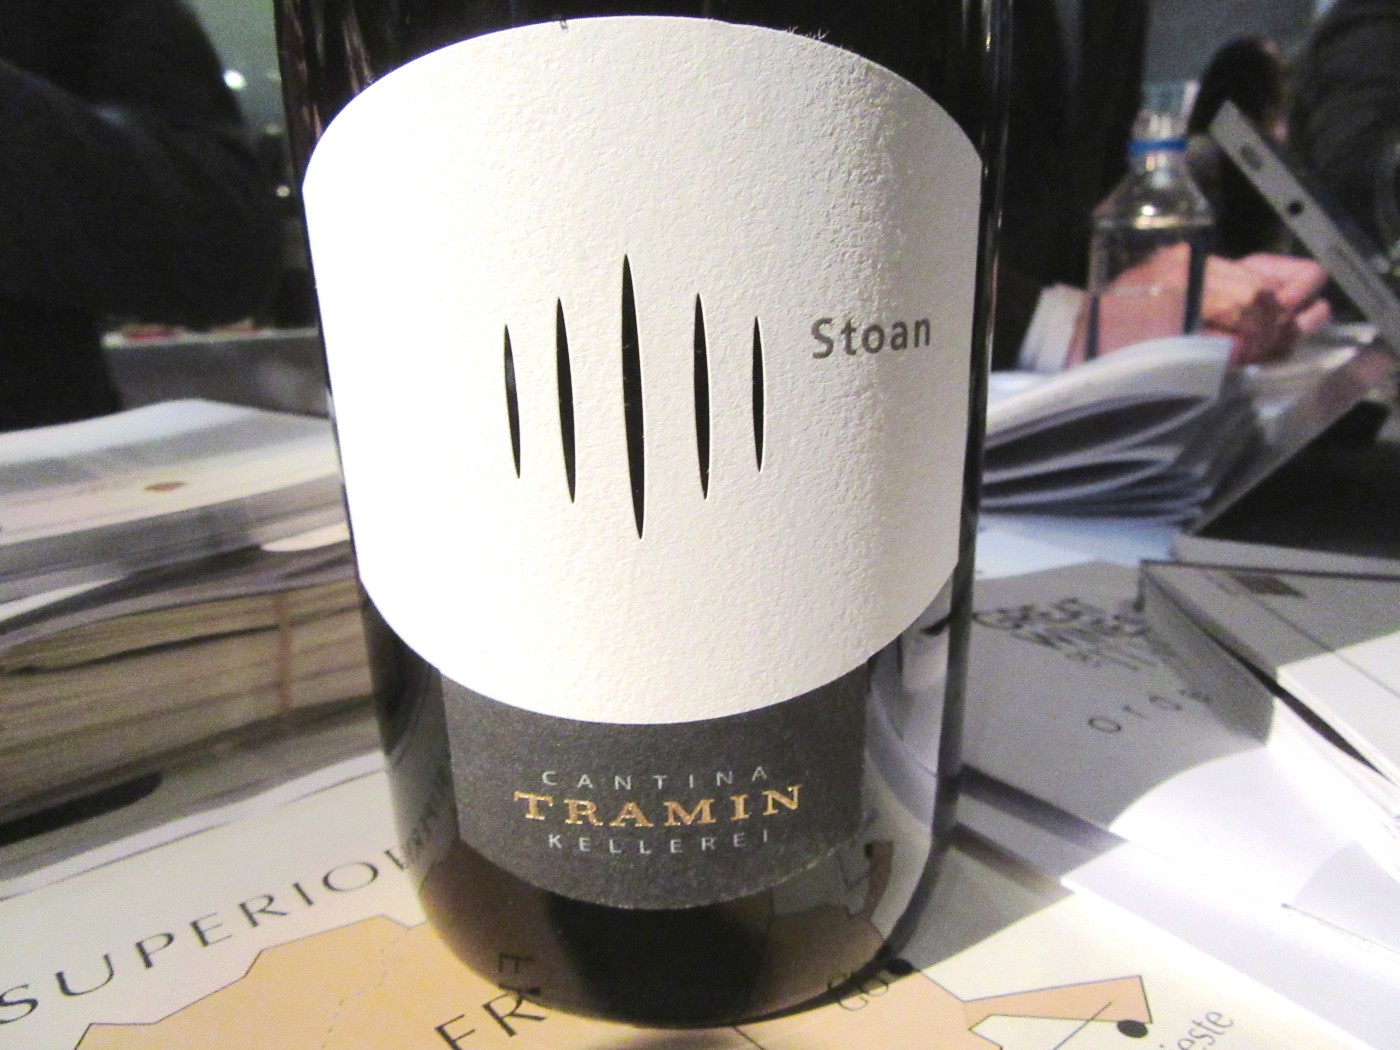 Catina Tramin, Stoan 2014, Alto Adige, Italy, Wine Casual